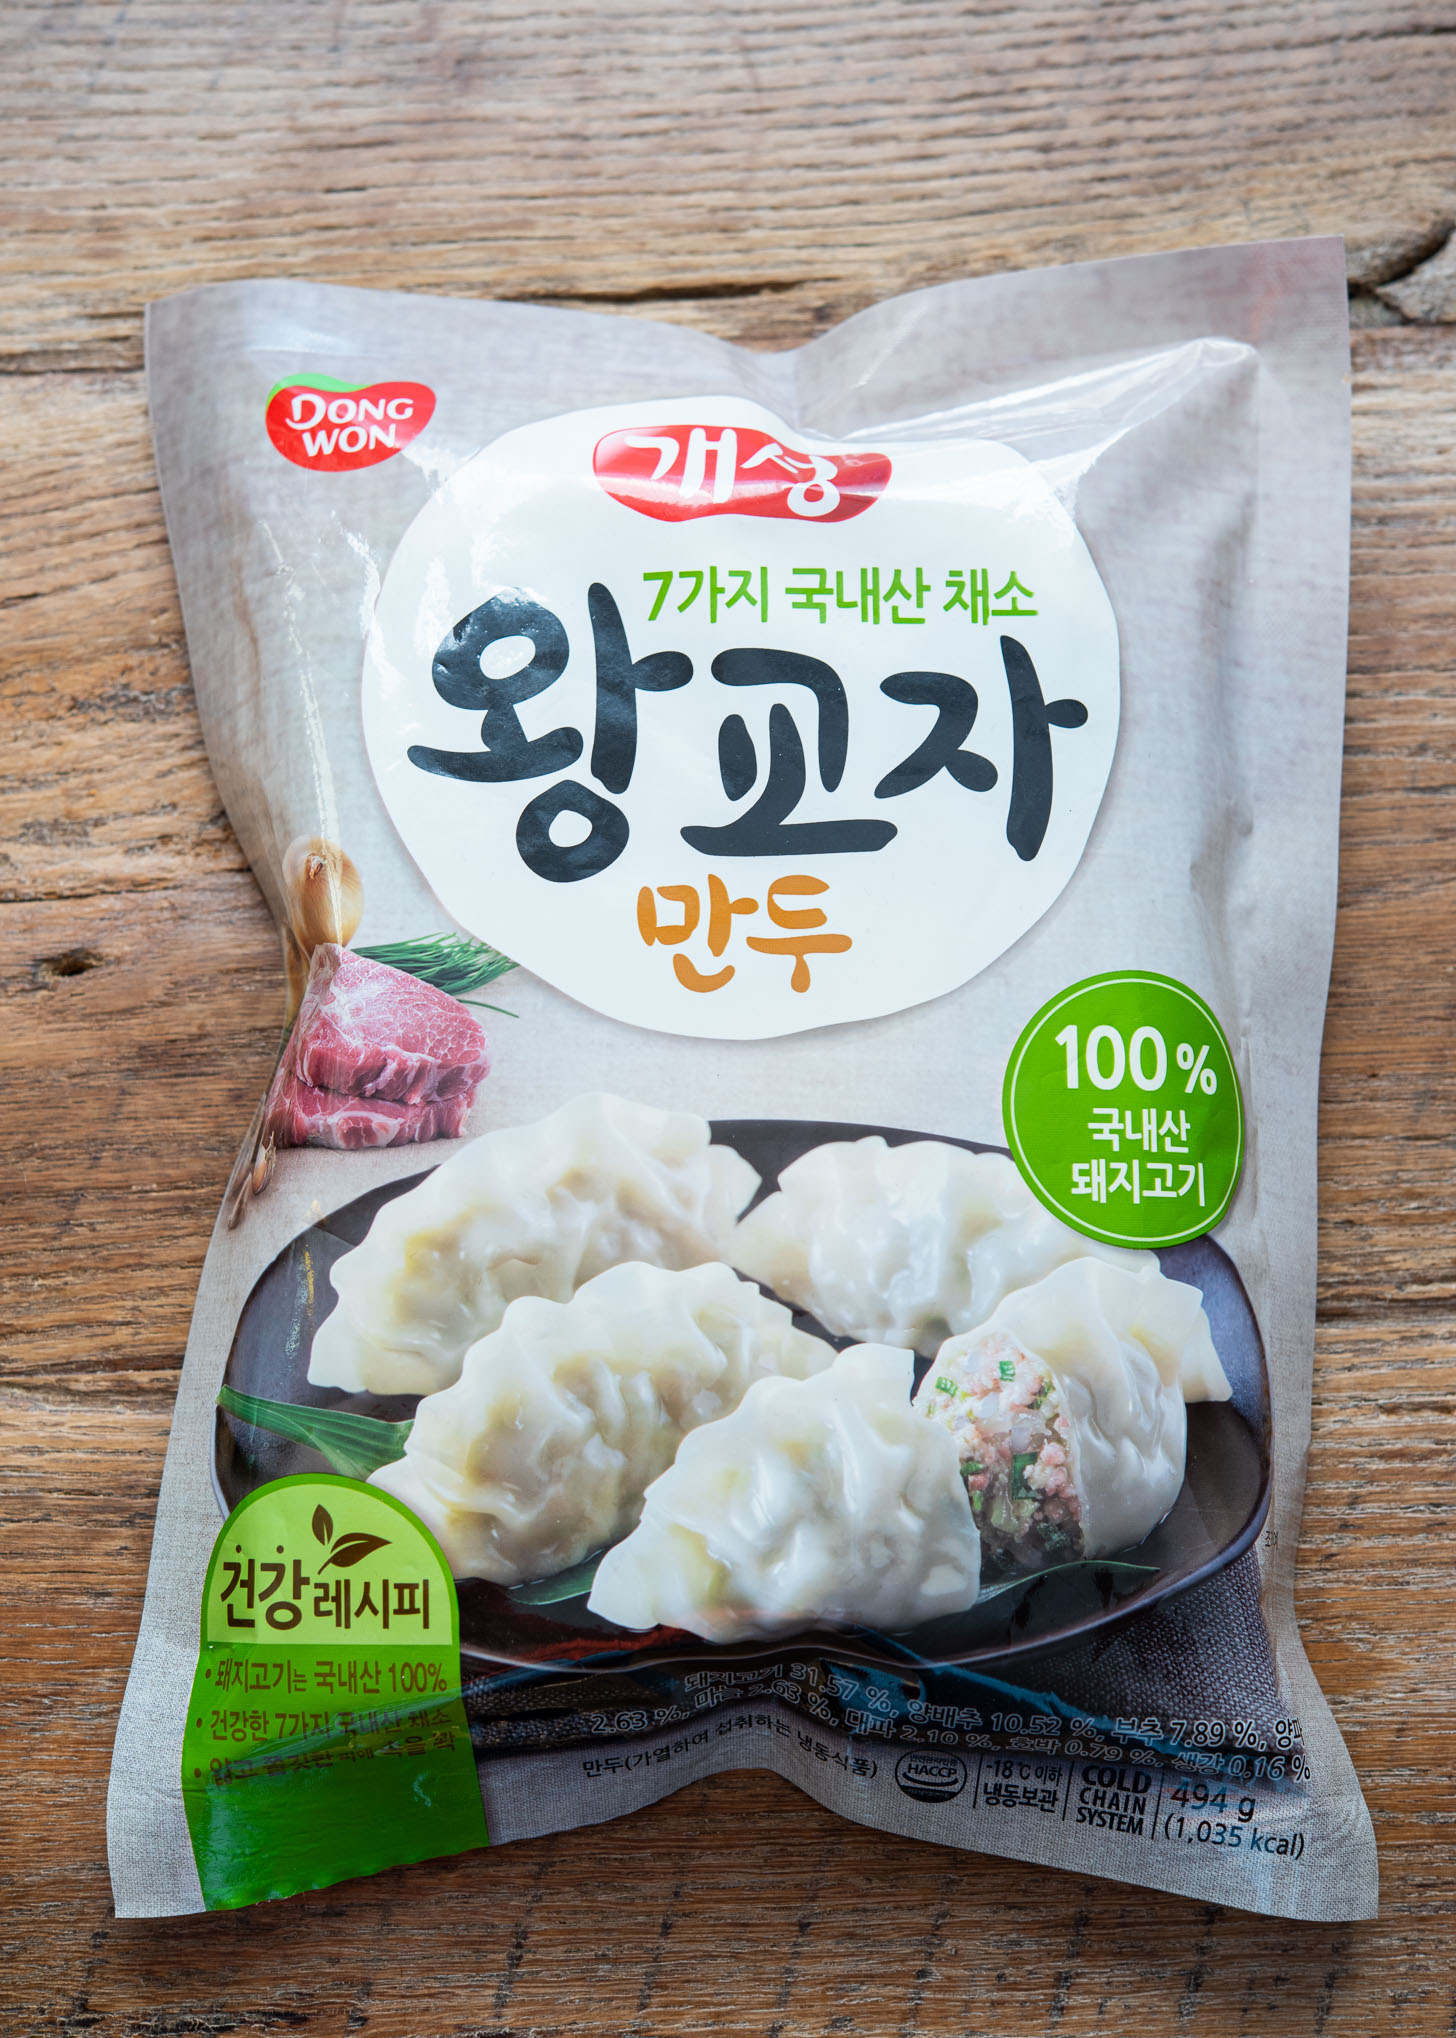 Store-bought frozen dumplings in a package.